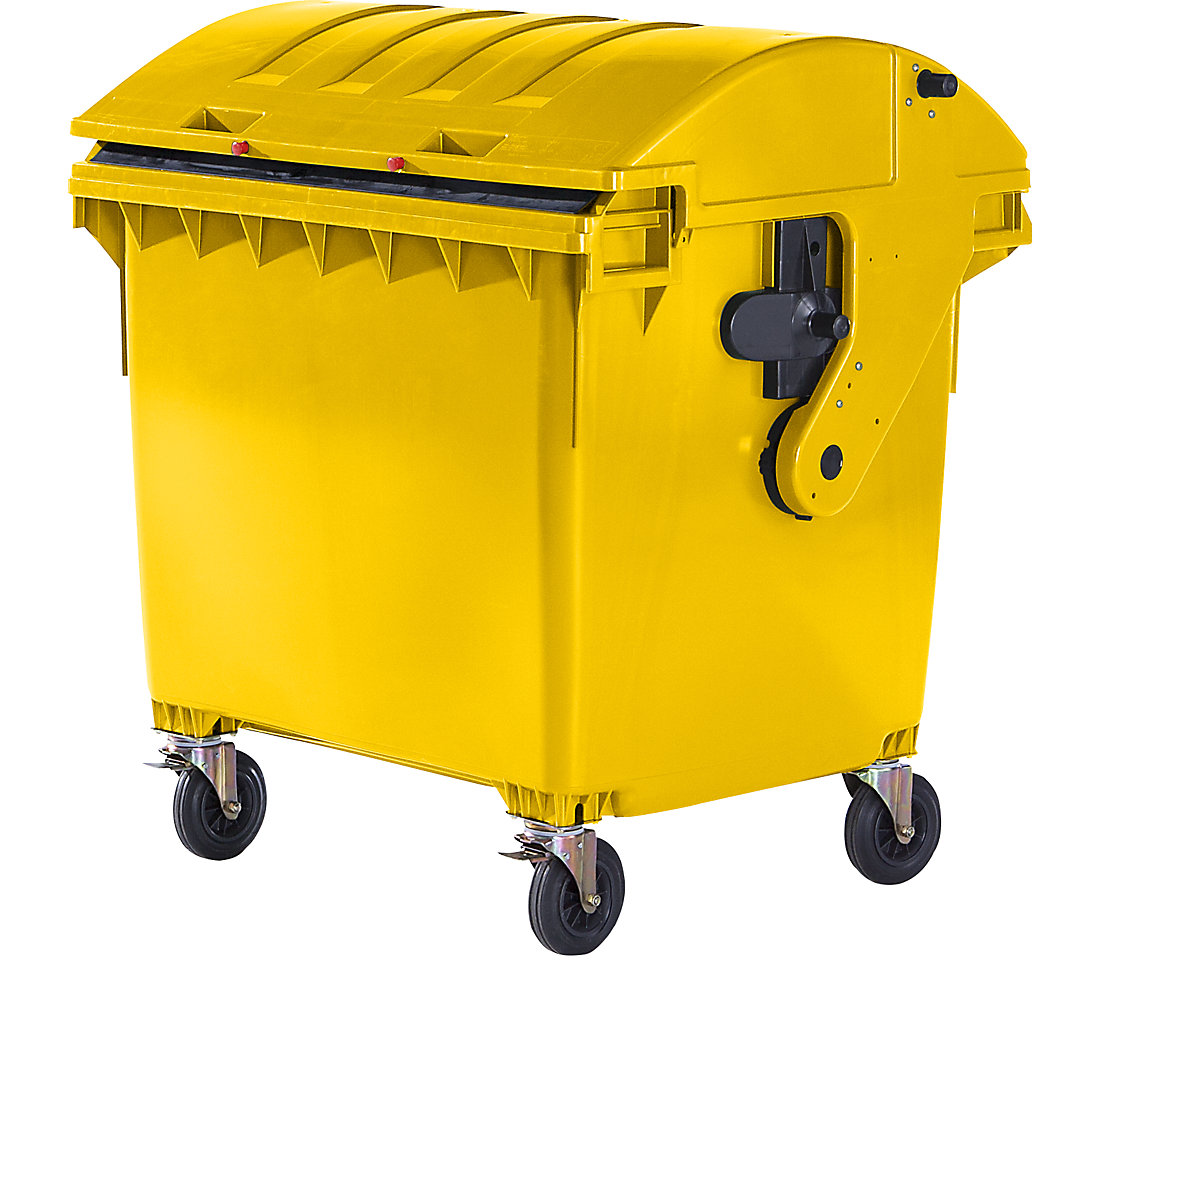 Pojemnik na odpady, z tworzywa, DIN EN 840, poj. 1100 l, wys. x szer. x głęb. 1360 x 1465 x 1100 mm, pokrywa przesuwana, zabezpieczenie przed dostępem dzieci, żółty, dostawa od 5 szt.-3